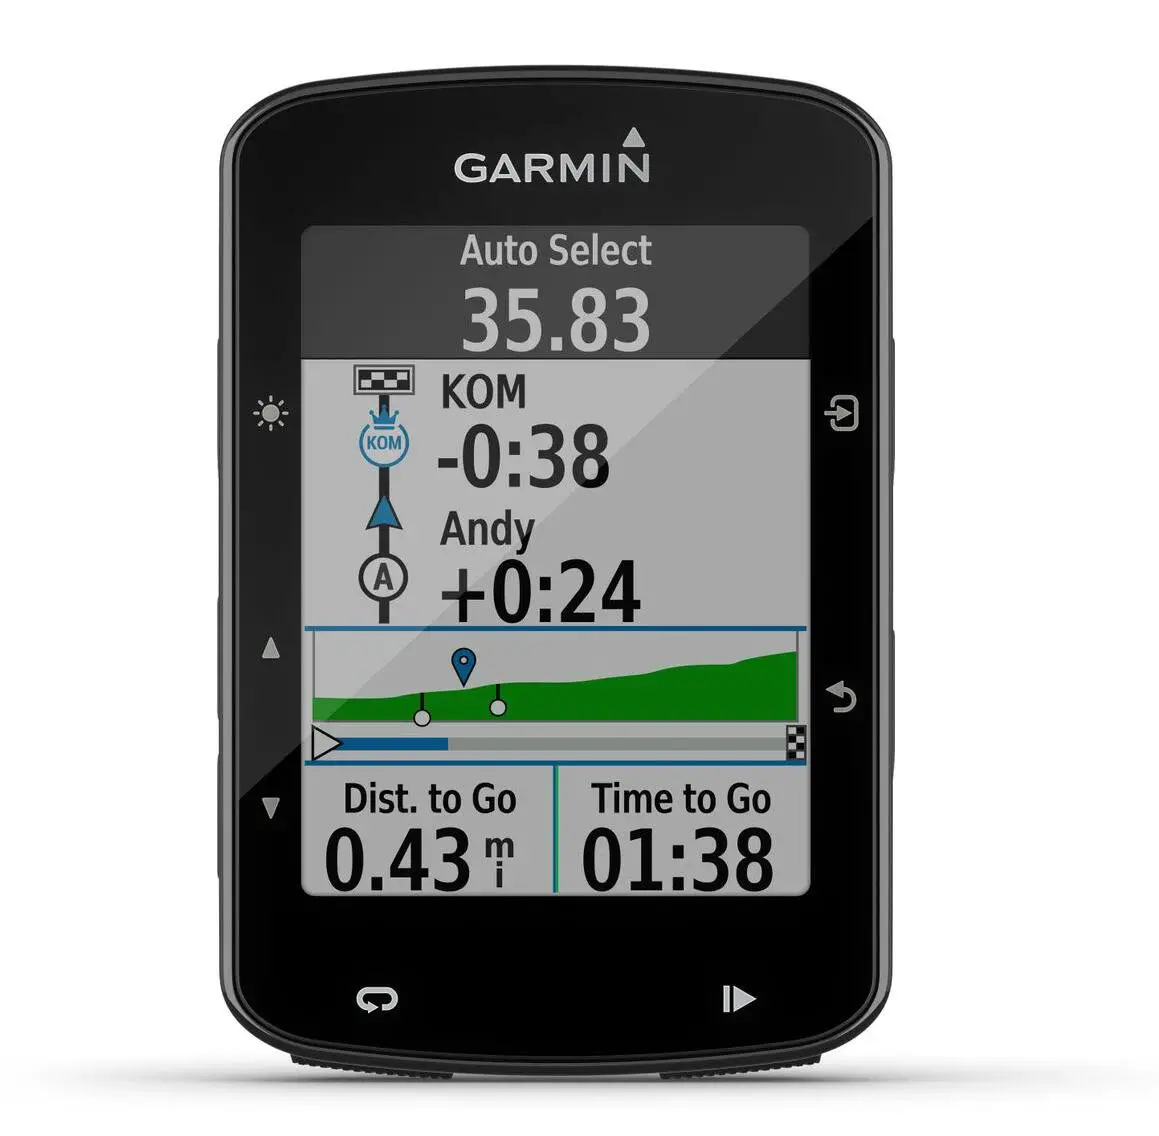 Edge 520 Plus | Información, y opinión - Correr una Maratón - Review de Garmin, Polar, Suunto, Fitbit...